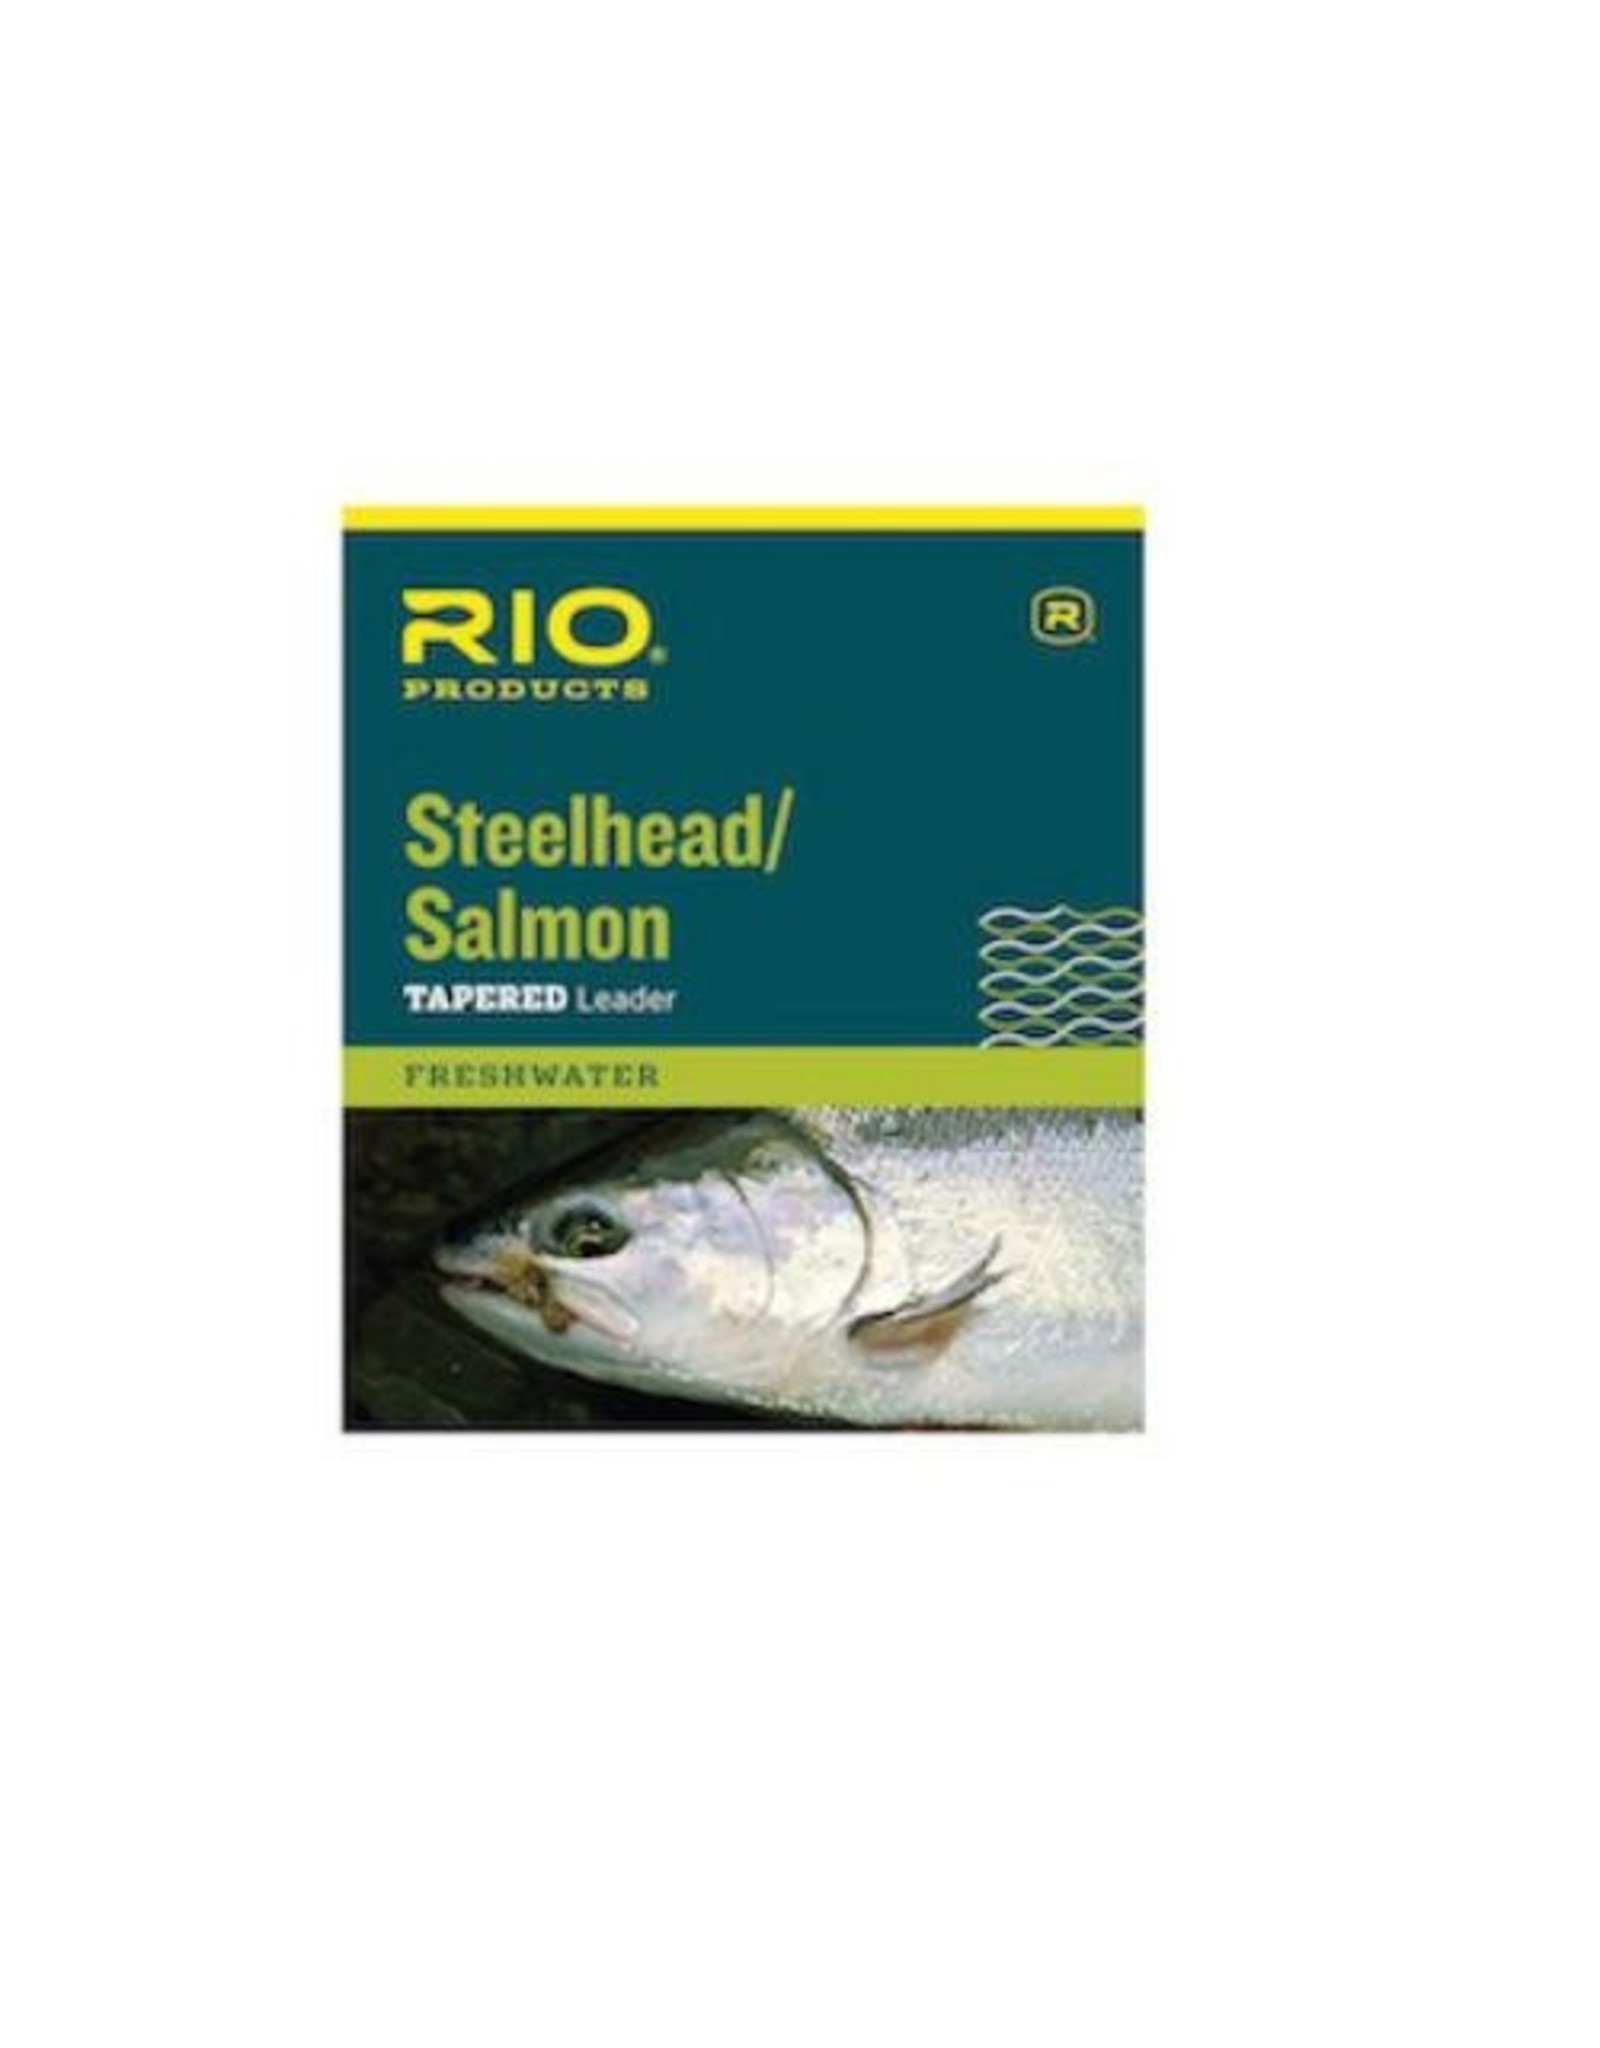 Rio Steelhead/Salmon Tapered Leader